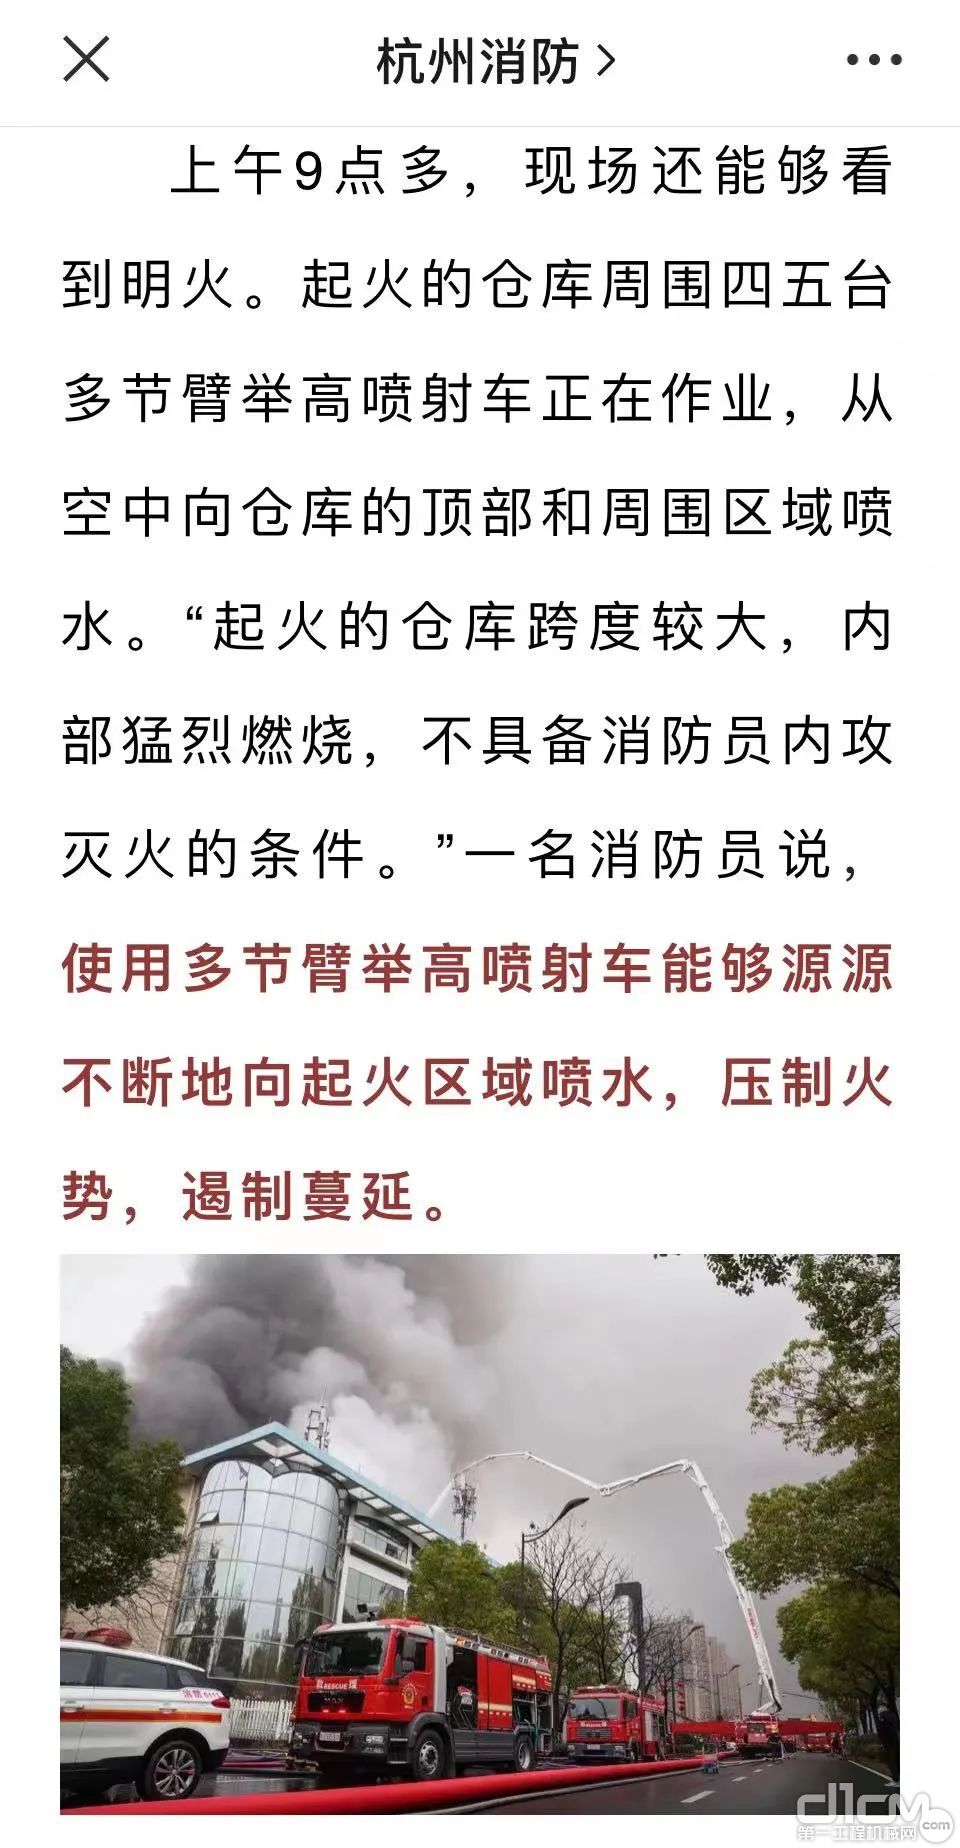 ▲“杭州消防”部分报道截图